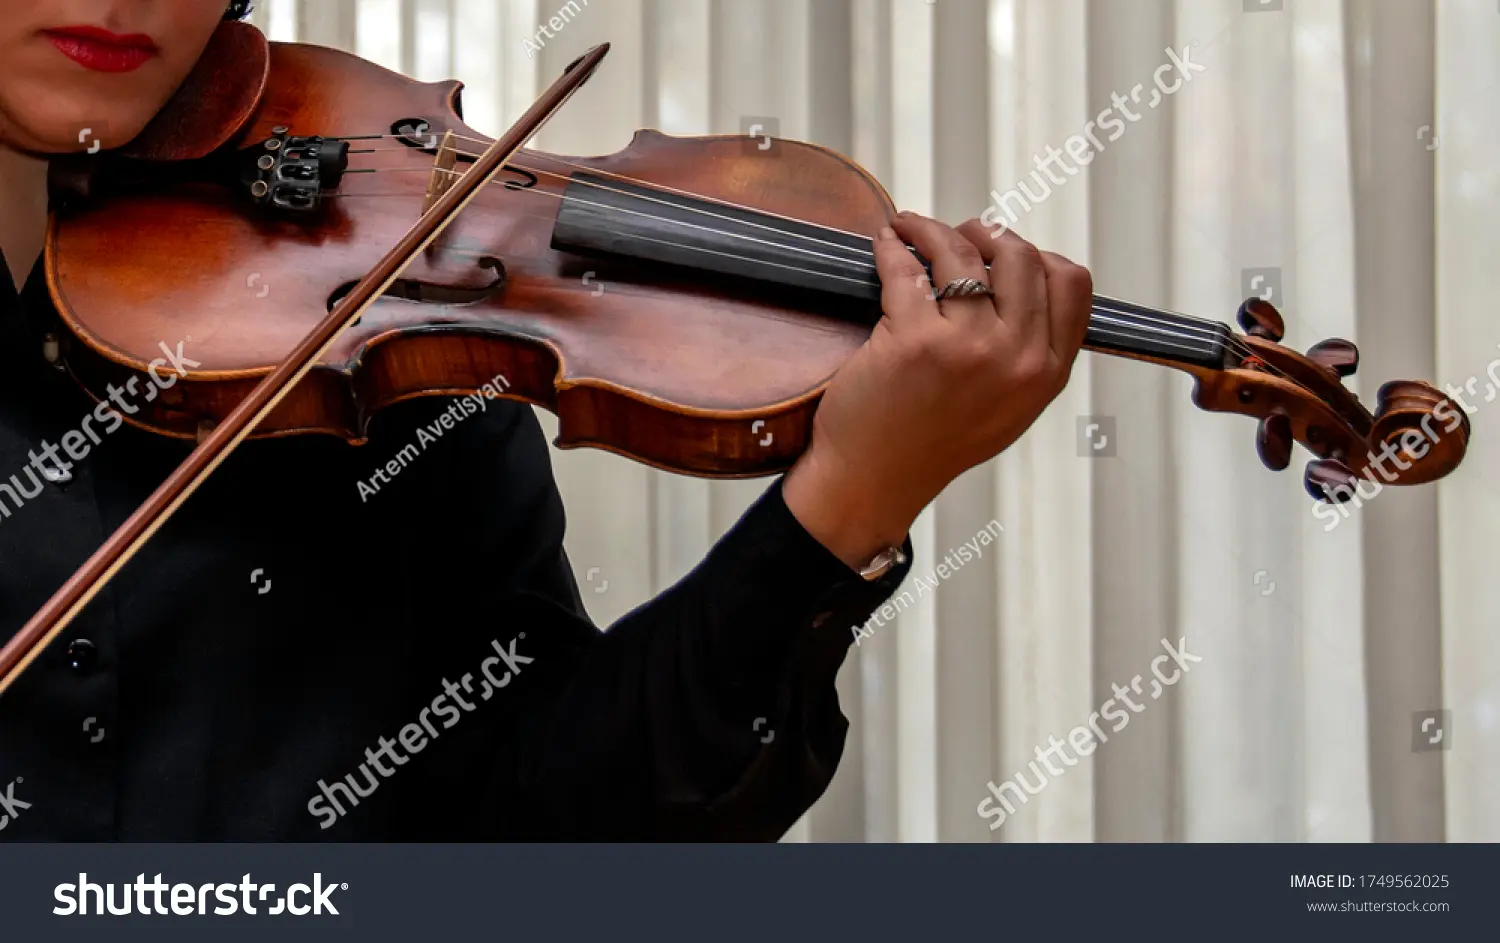 cual es el femenino de violin - El violín es masculino o femenino